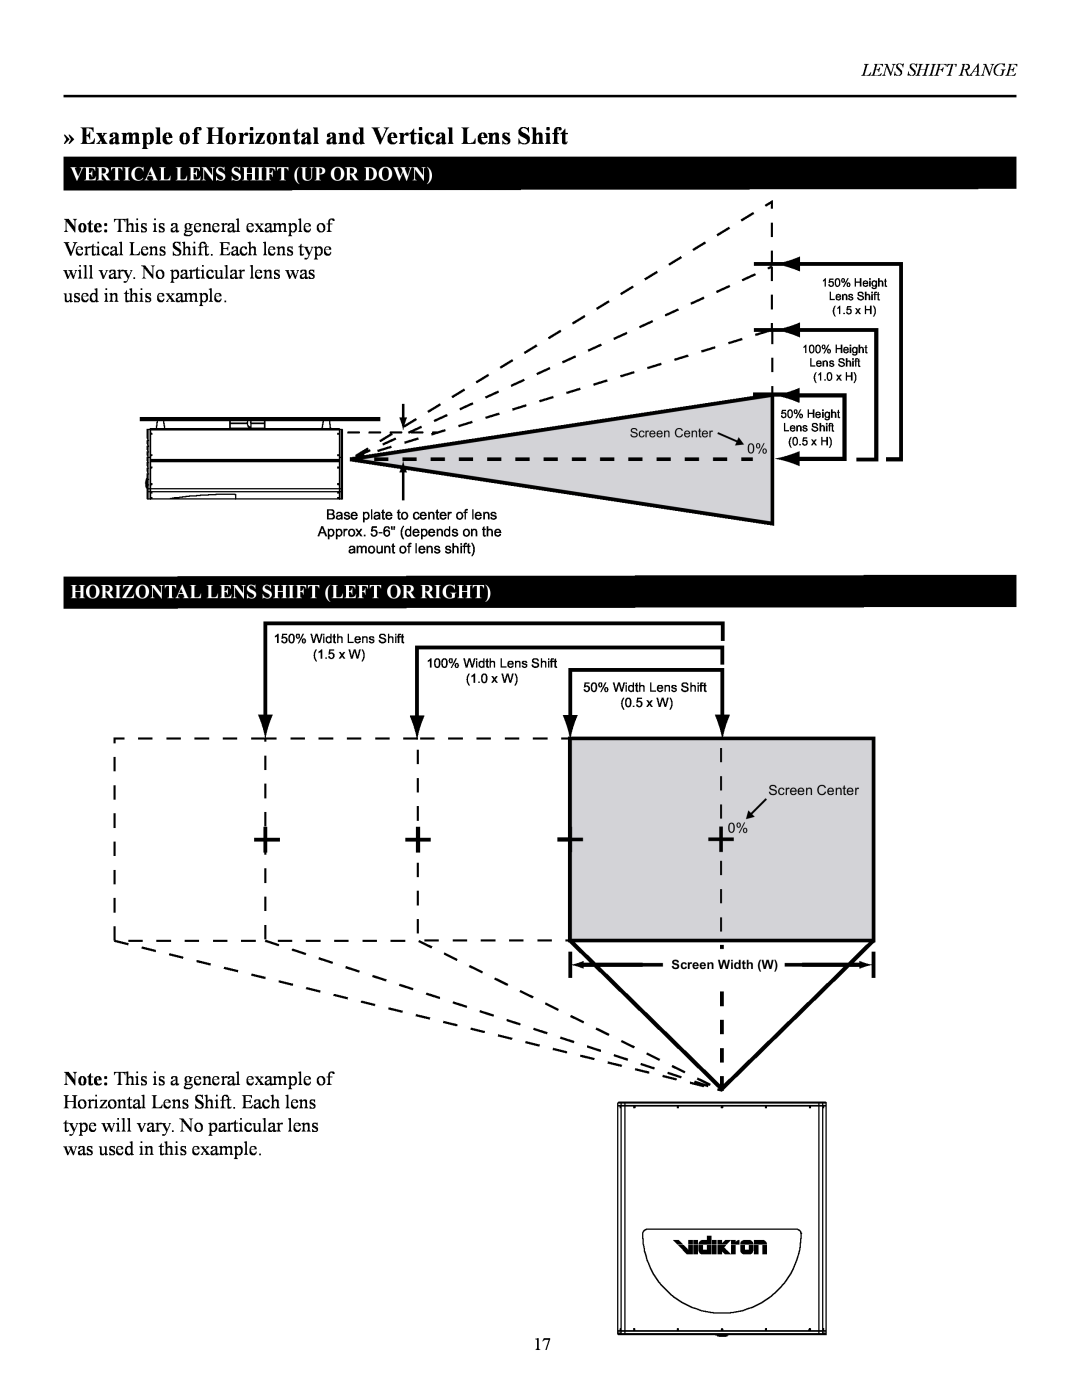 Vidikron 100 manual » Example of Horizontal and Vertical Lens Shift, Vertical Lens Shift Up Or Down 